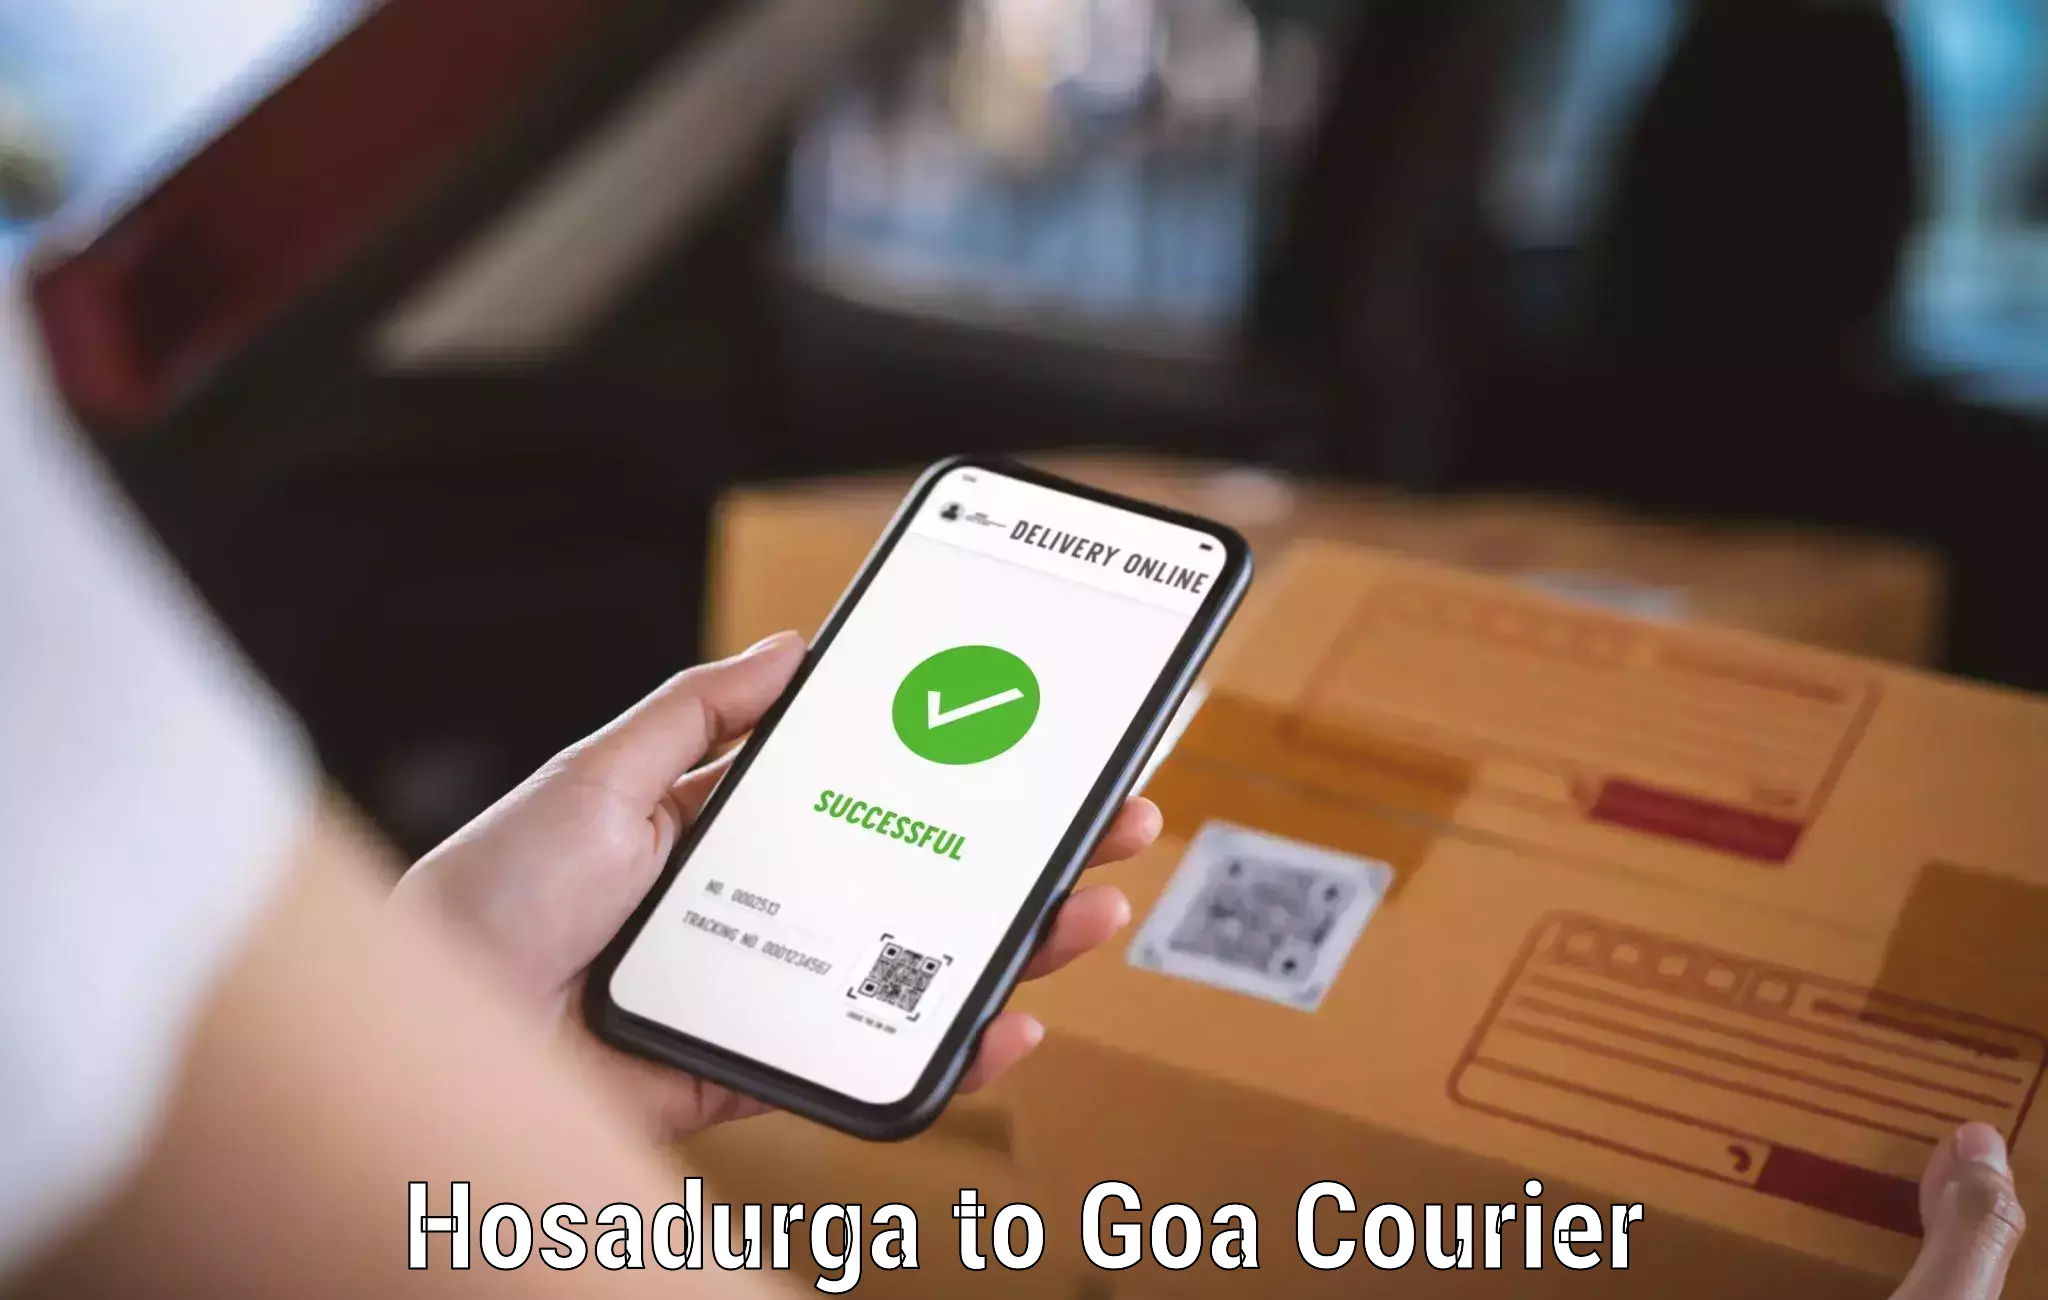 Air courier services Hosadurga to Goa